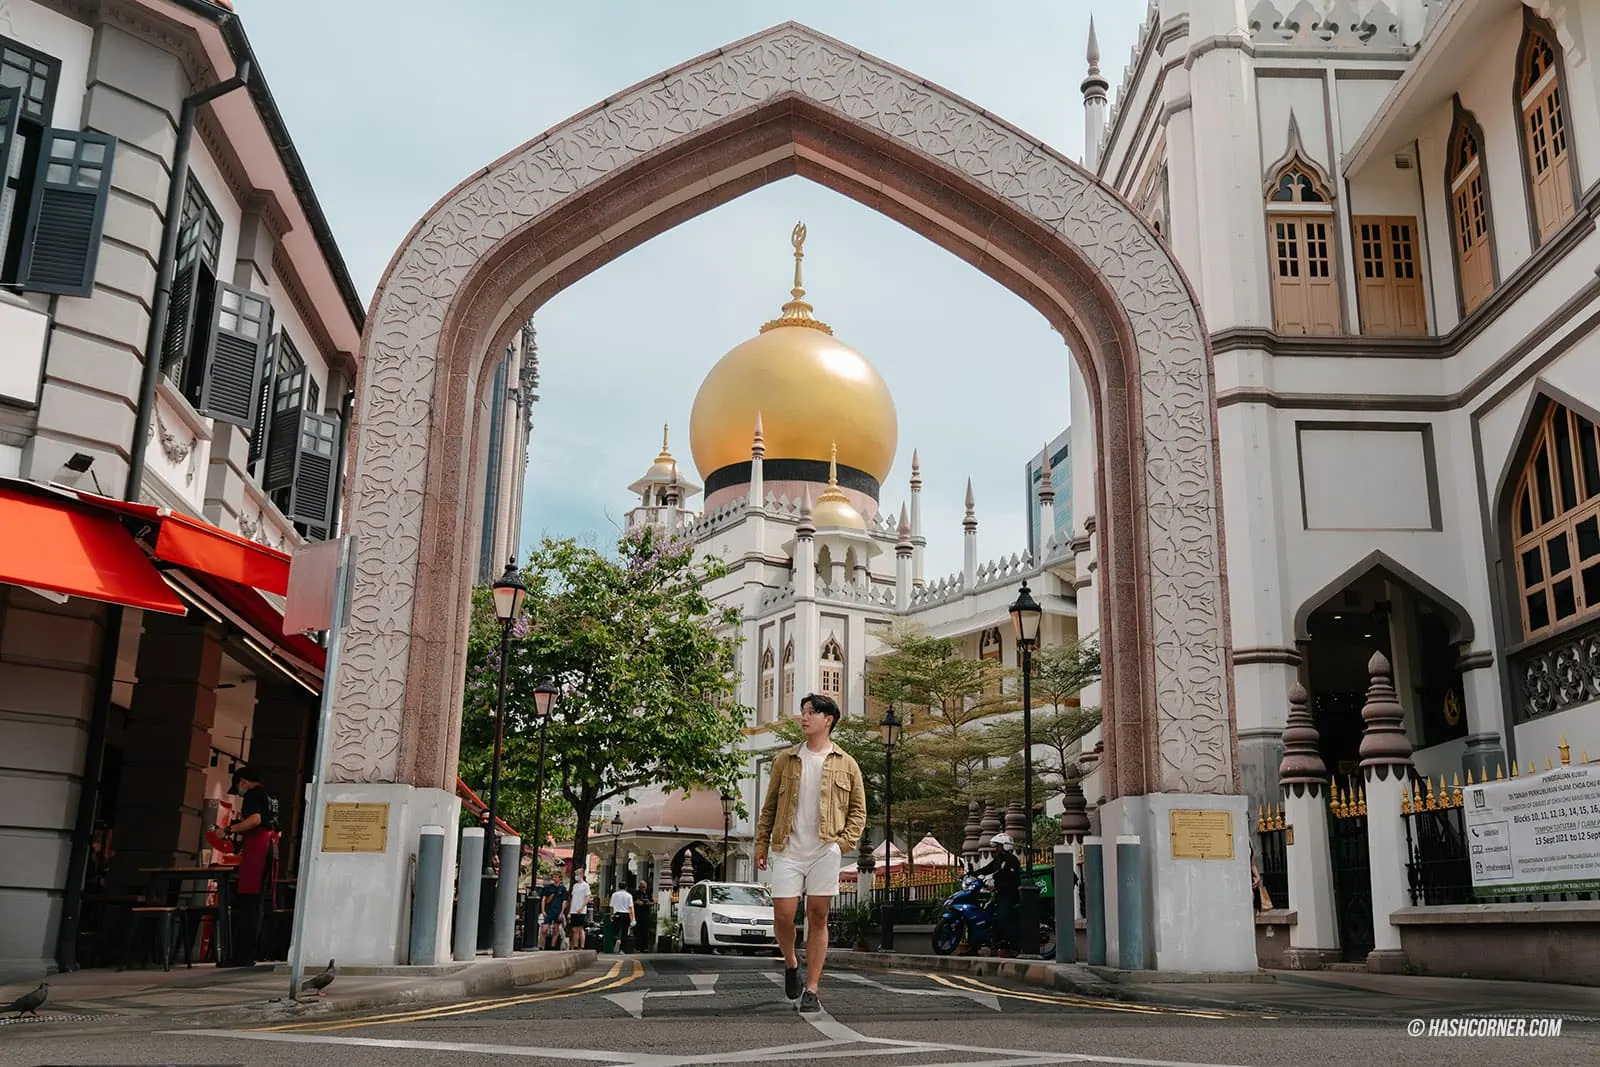 รีวิว มัสยิดสุลต่าน (Sultan Mosque) x สิงคโปร์ มุมถ่ายรูปสุดชิค 